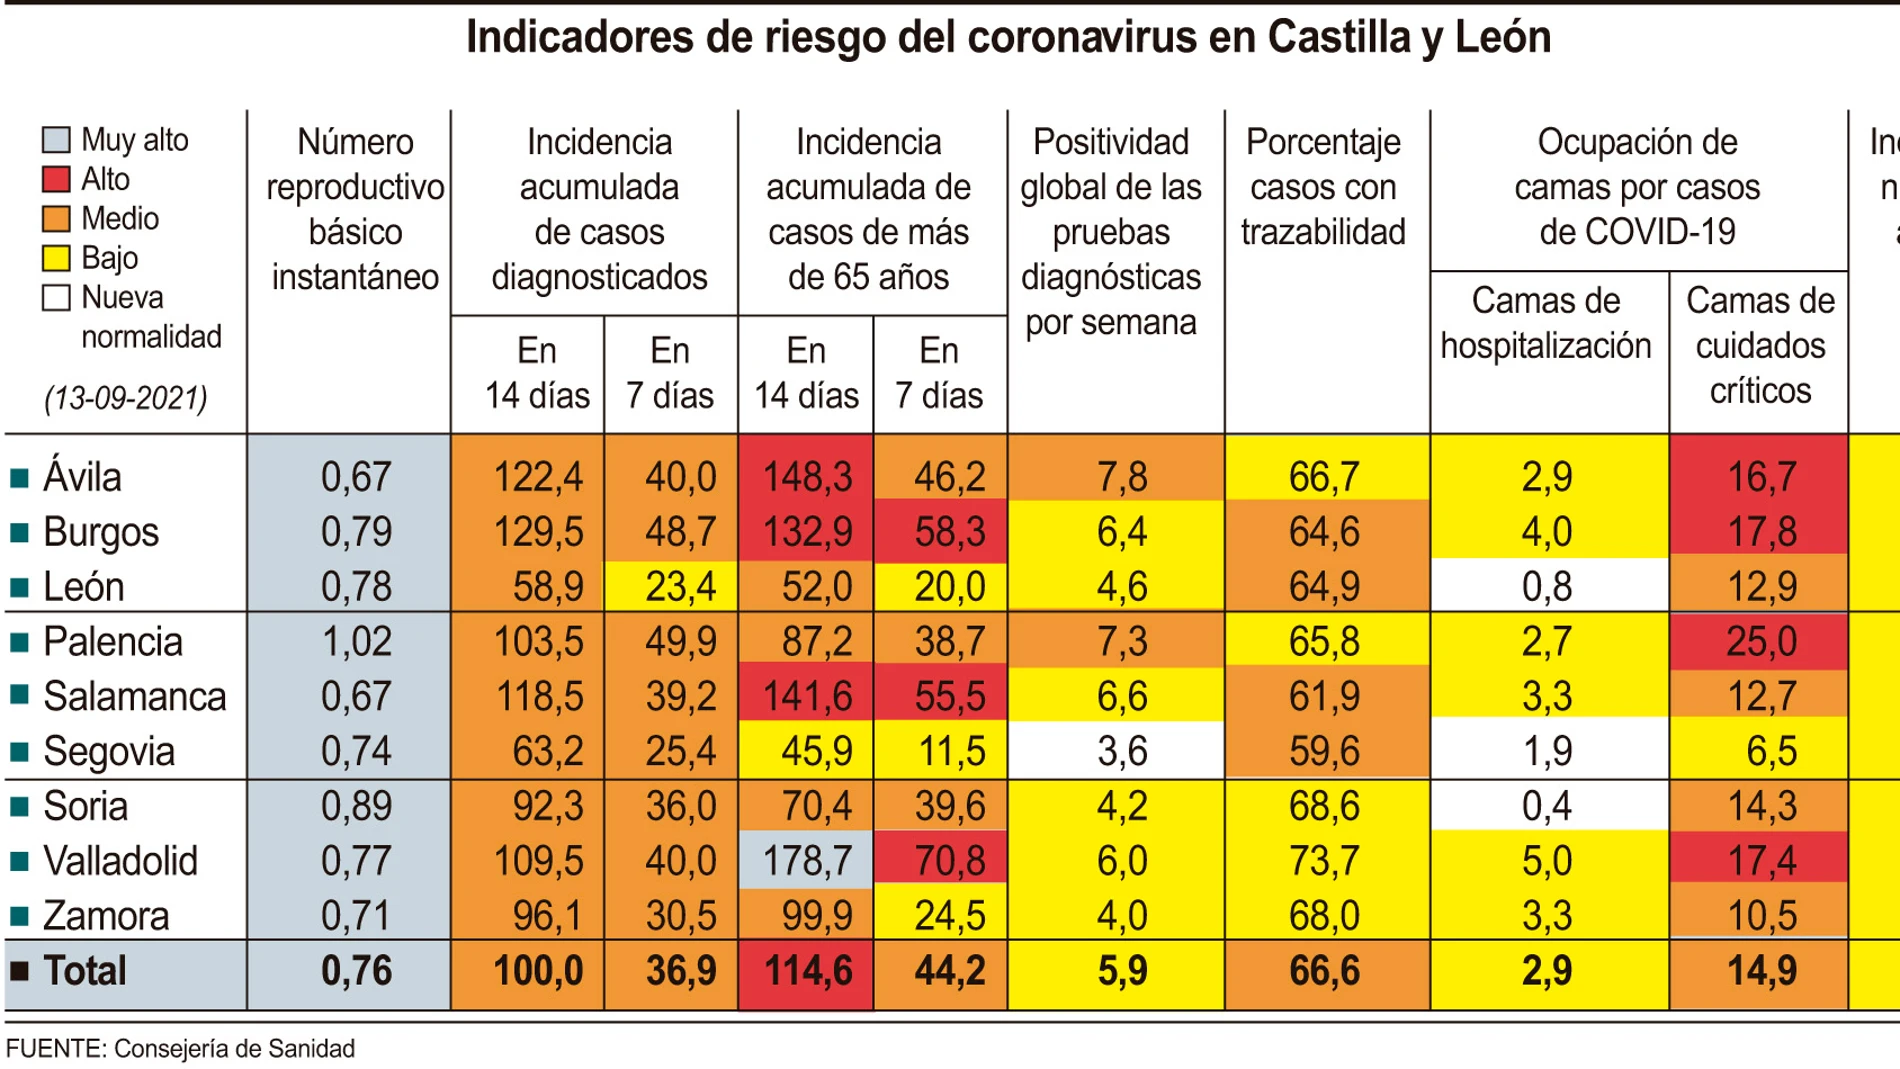 Indicadores de riesgo del coronavirus en Castilla y León